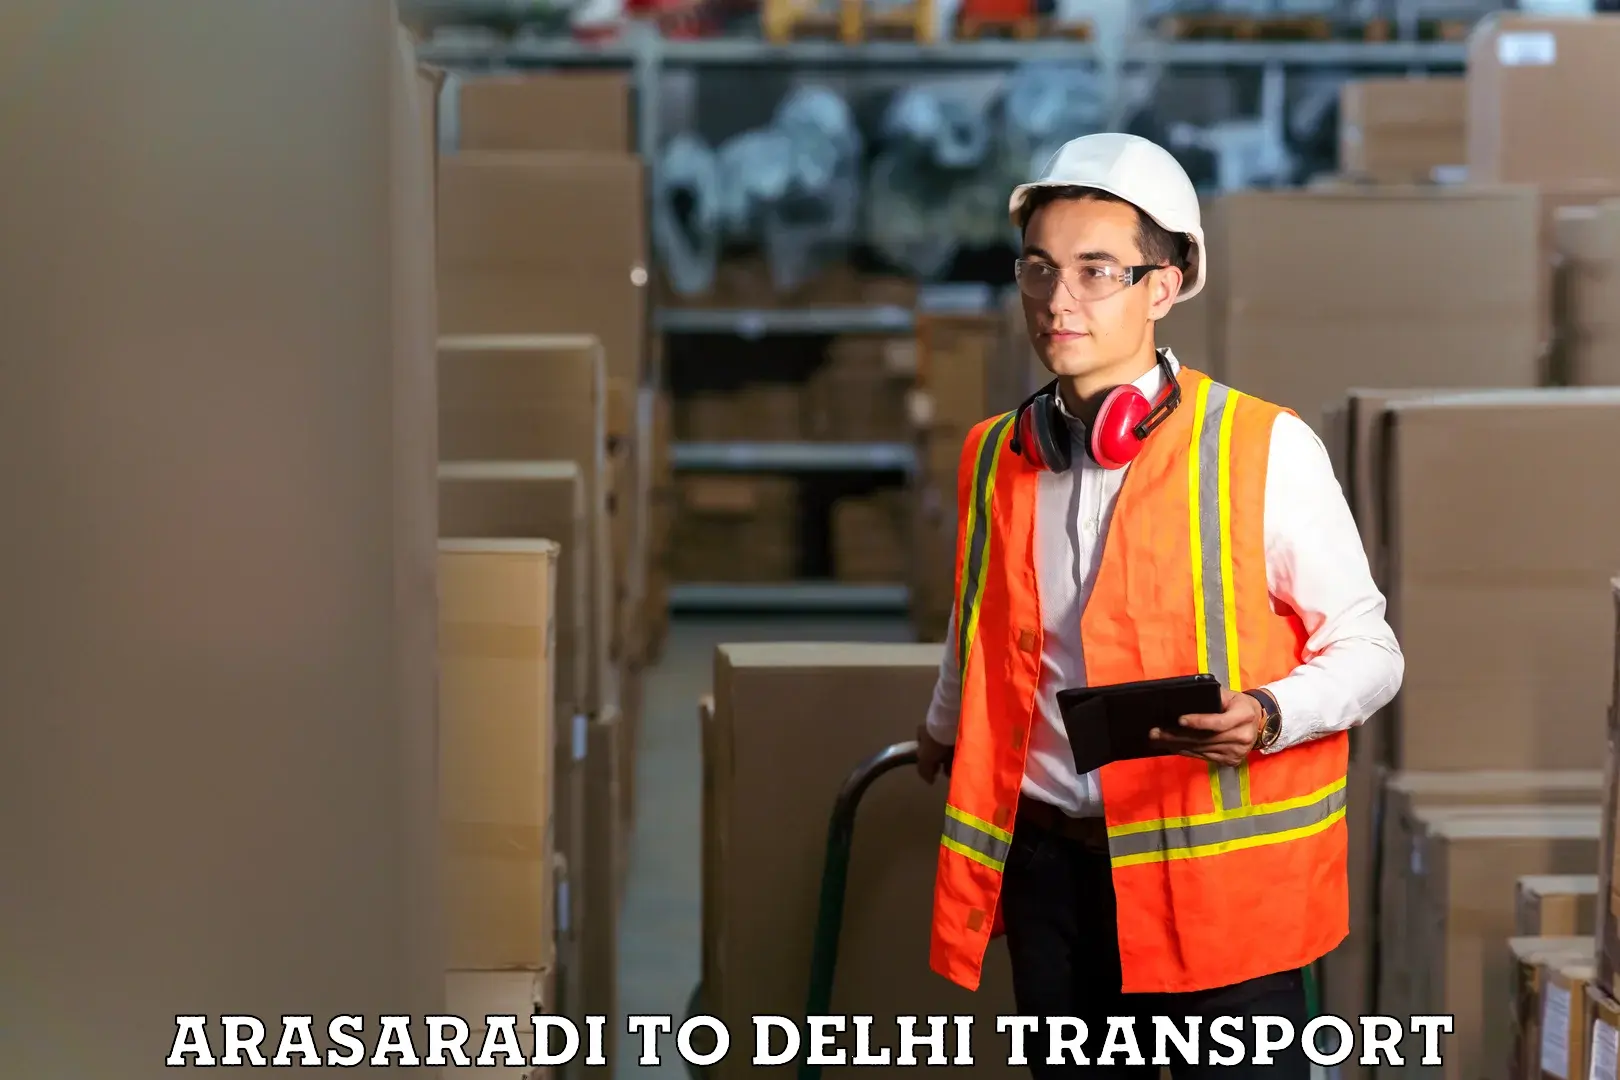 Online transport service Arasaradi to Delhi